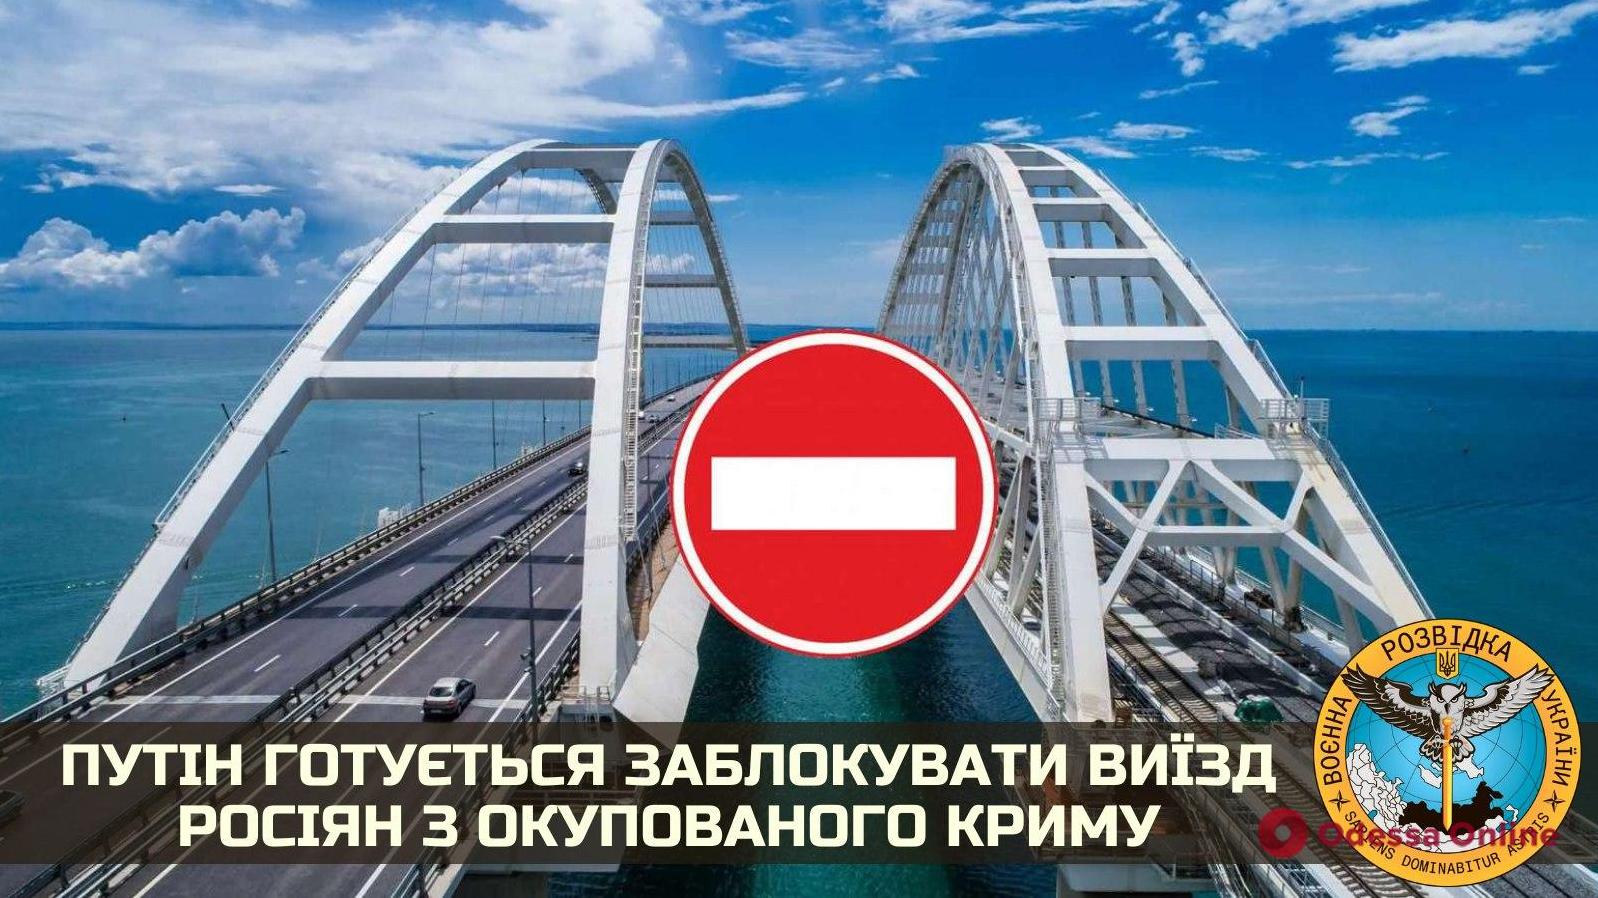 Стаття Путин готовится перекрыть Керченский мост: 600 тысяч человек окажутся в заложниках Ранкове місто. Крим